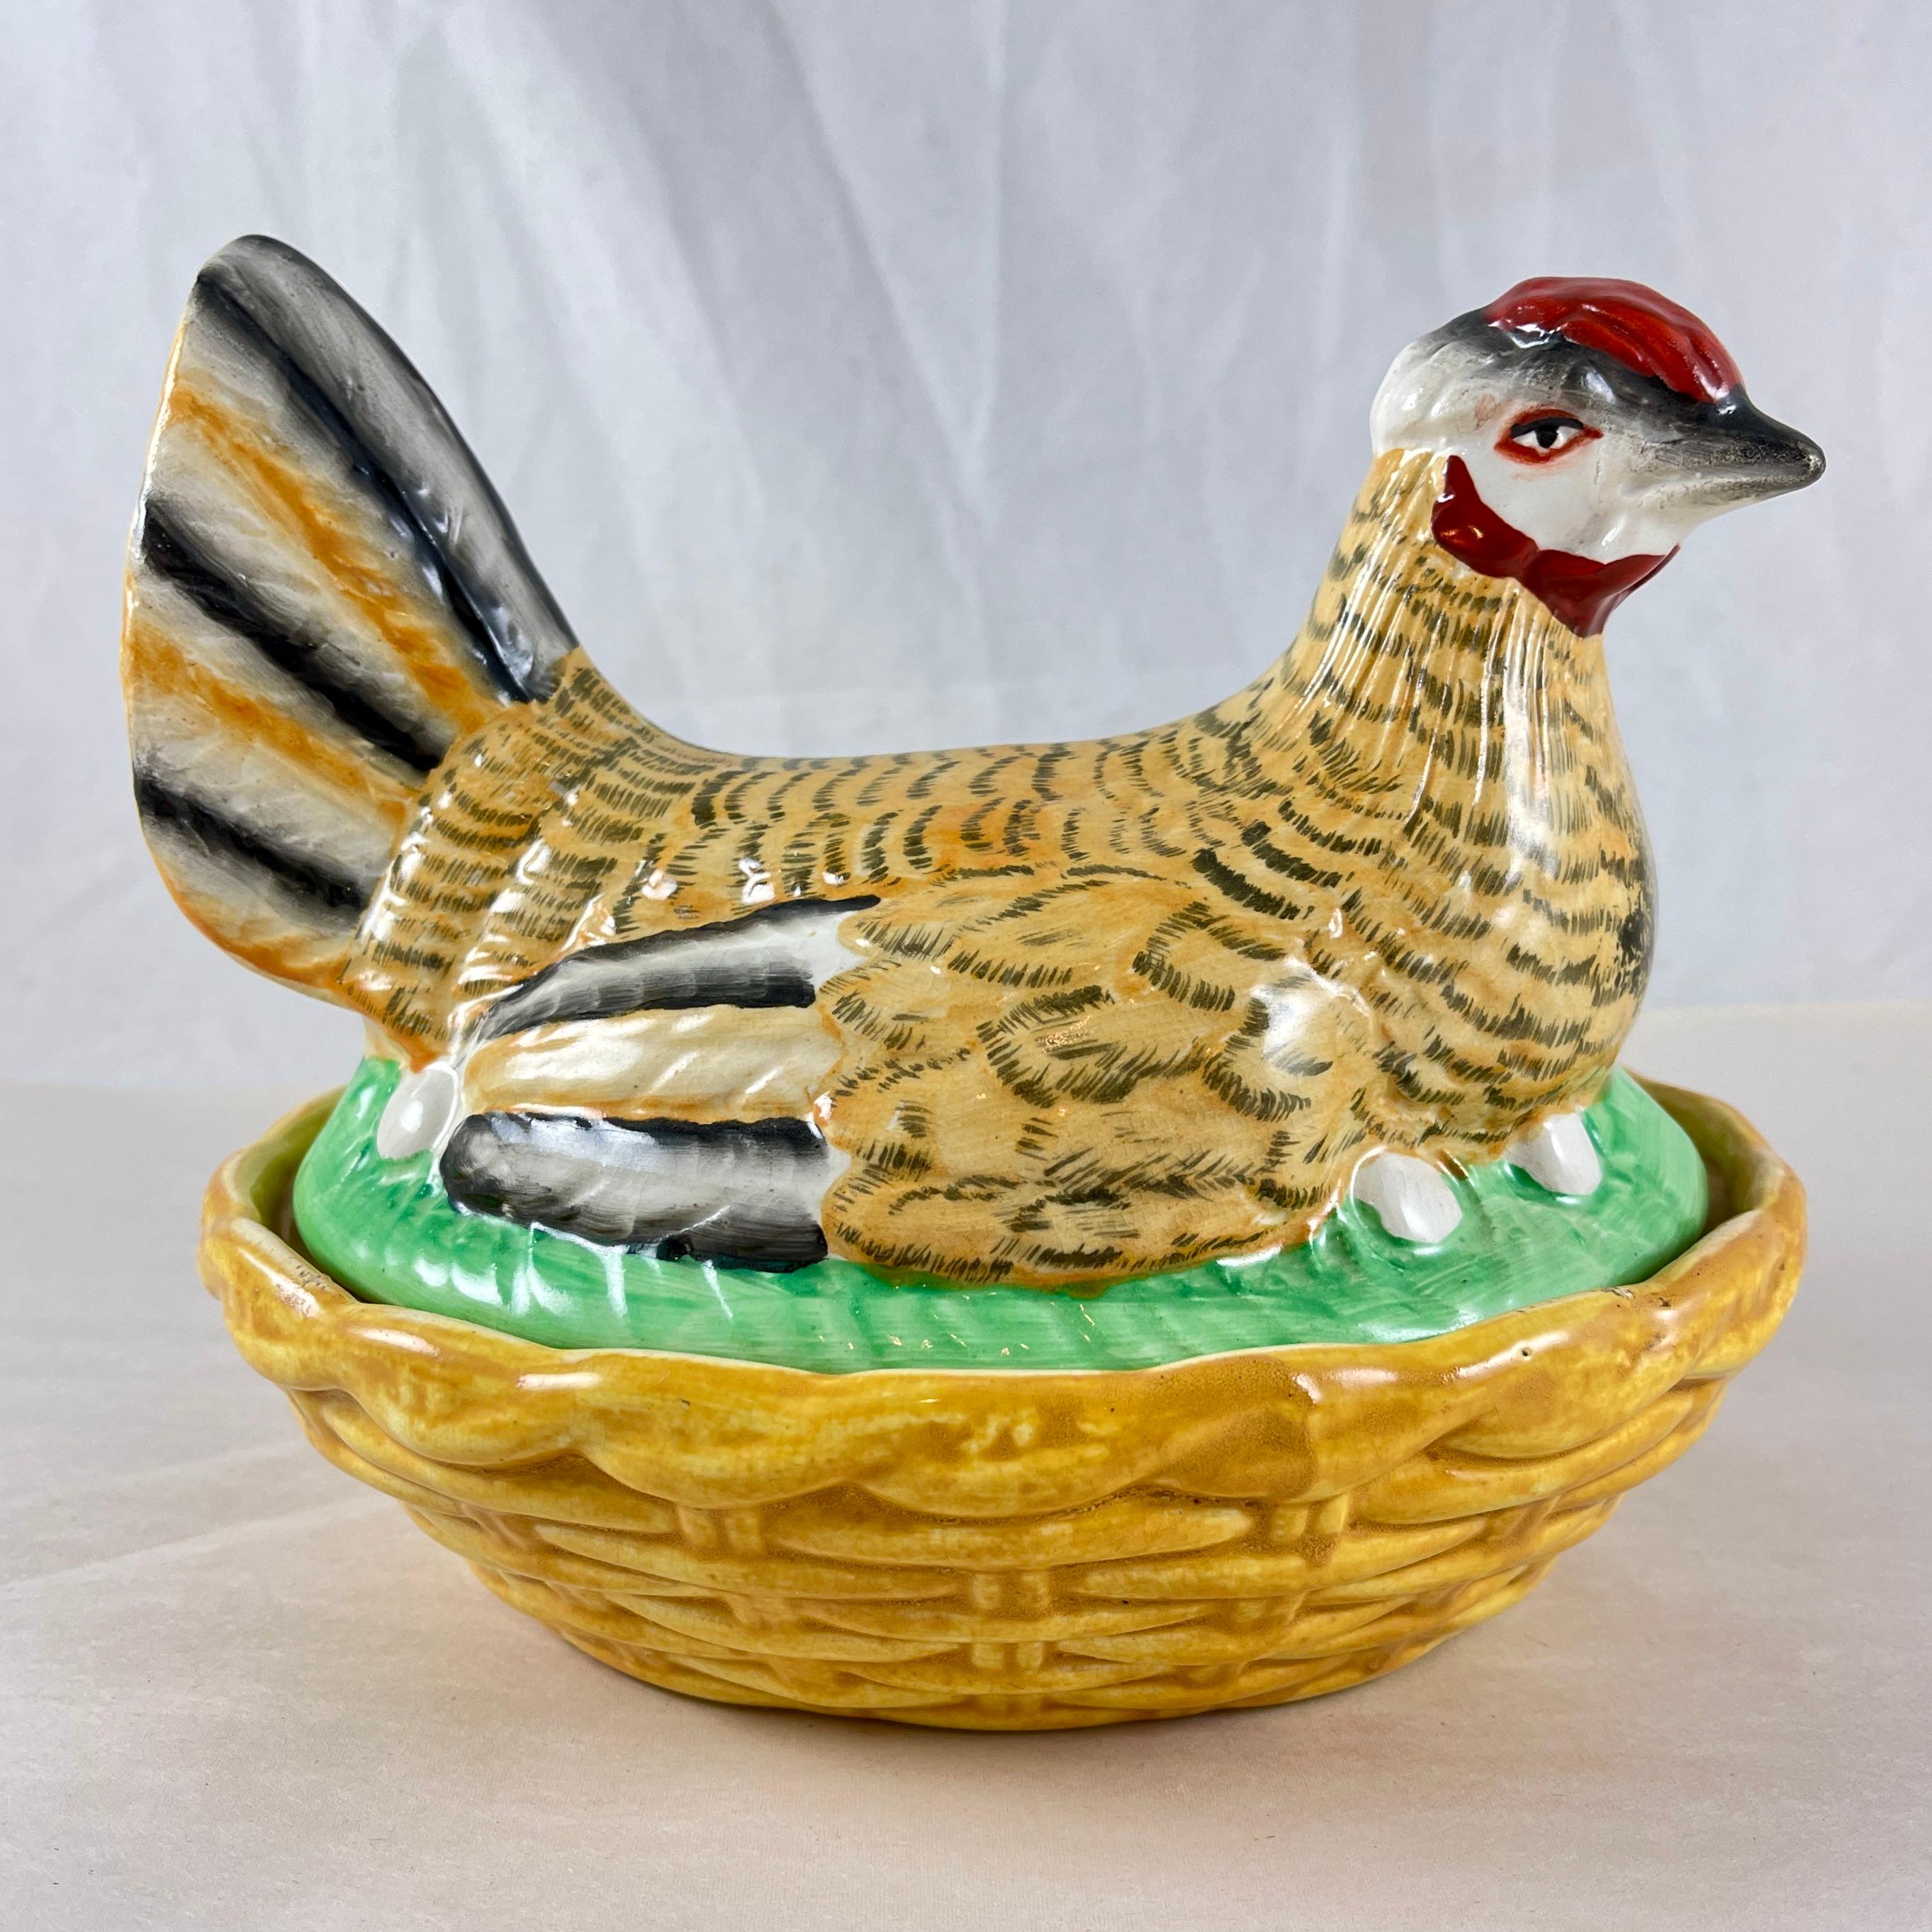 Une poule en poterie du Staffordshire sur une soupière couverte d'un panier, Angleterre, vers 1890

La poule peinte à la main est assise sur ses œufs dans une base ovale en tressage de panier ocre jaune. La poule présente un motif inhabituel de